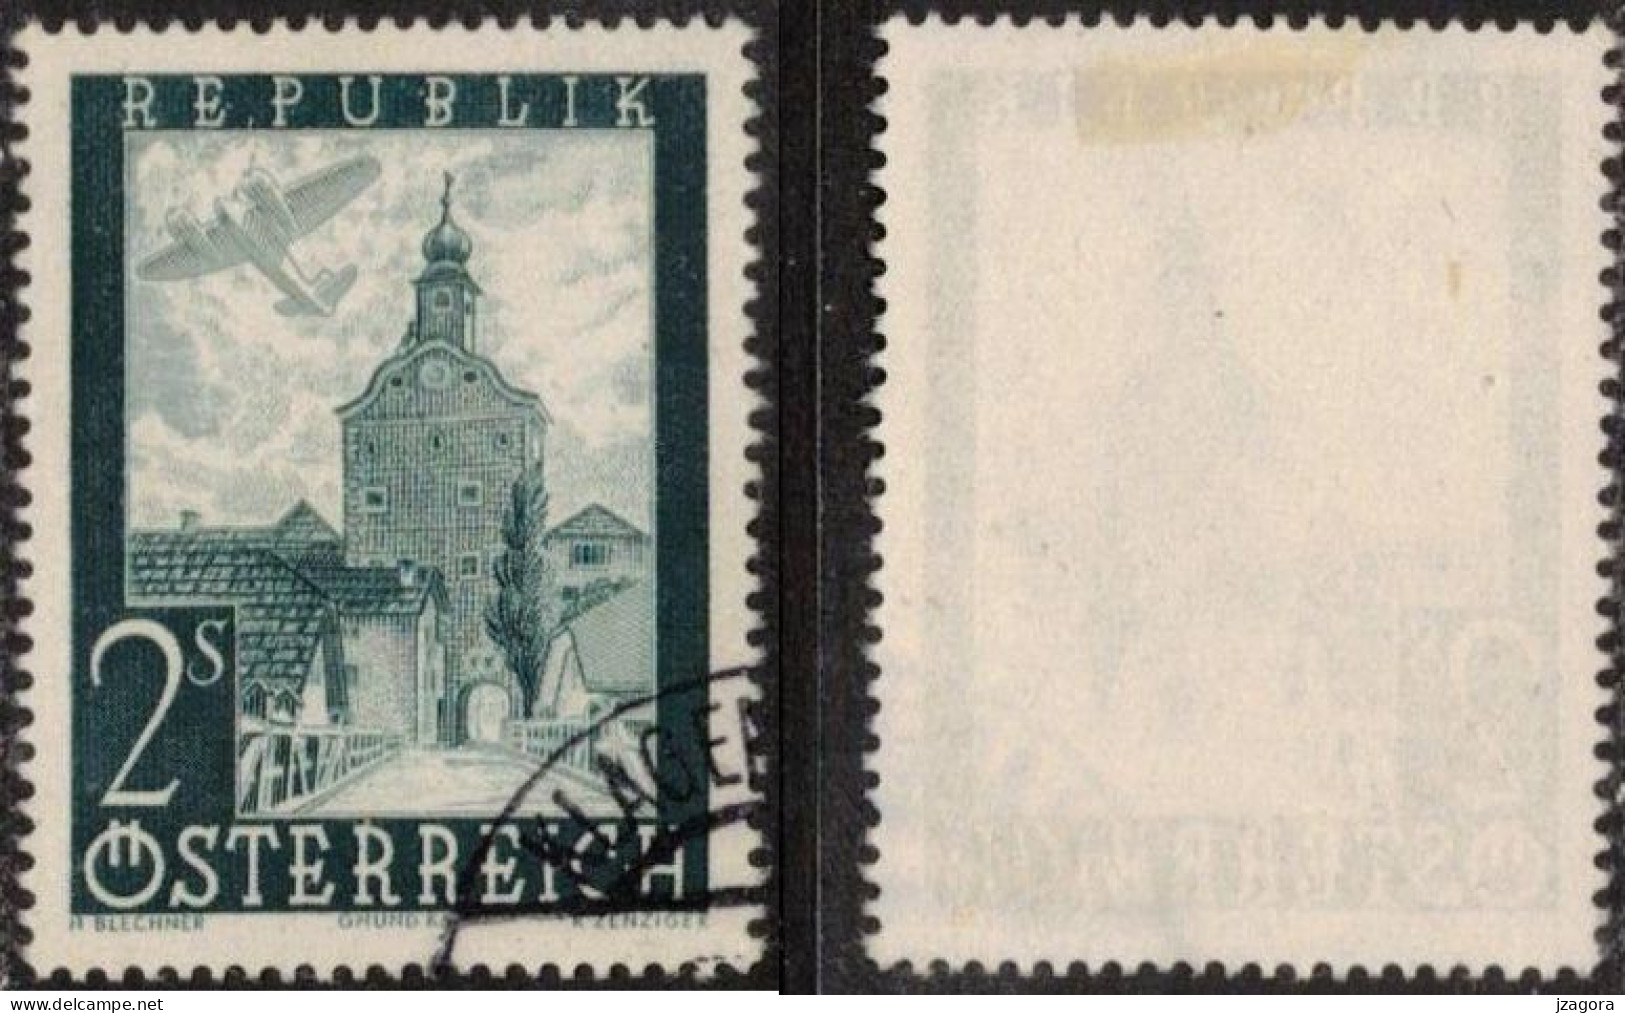 ARCHITECTURE HISTORY STADTTURM CITY TOWER GRUMD AUSTRIA ÖSTERREICH AUTRICHE 1947 MI 824 Sc C49 Flugpost Air Mail - Used Stamps